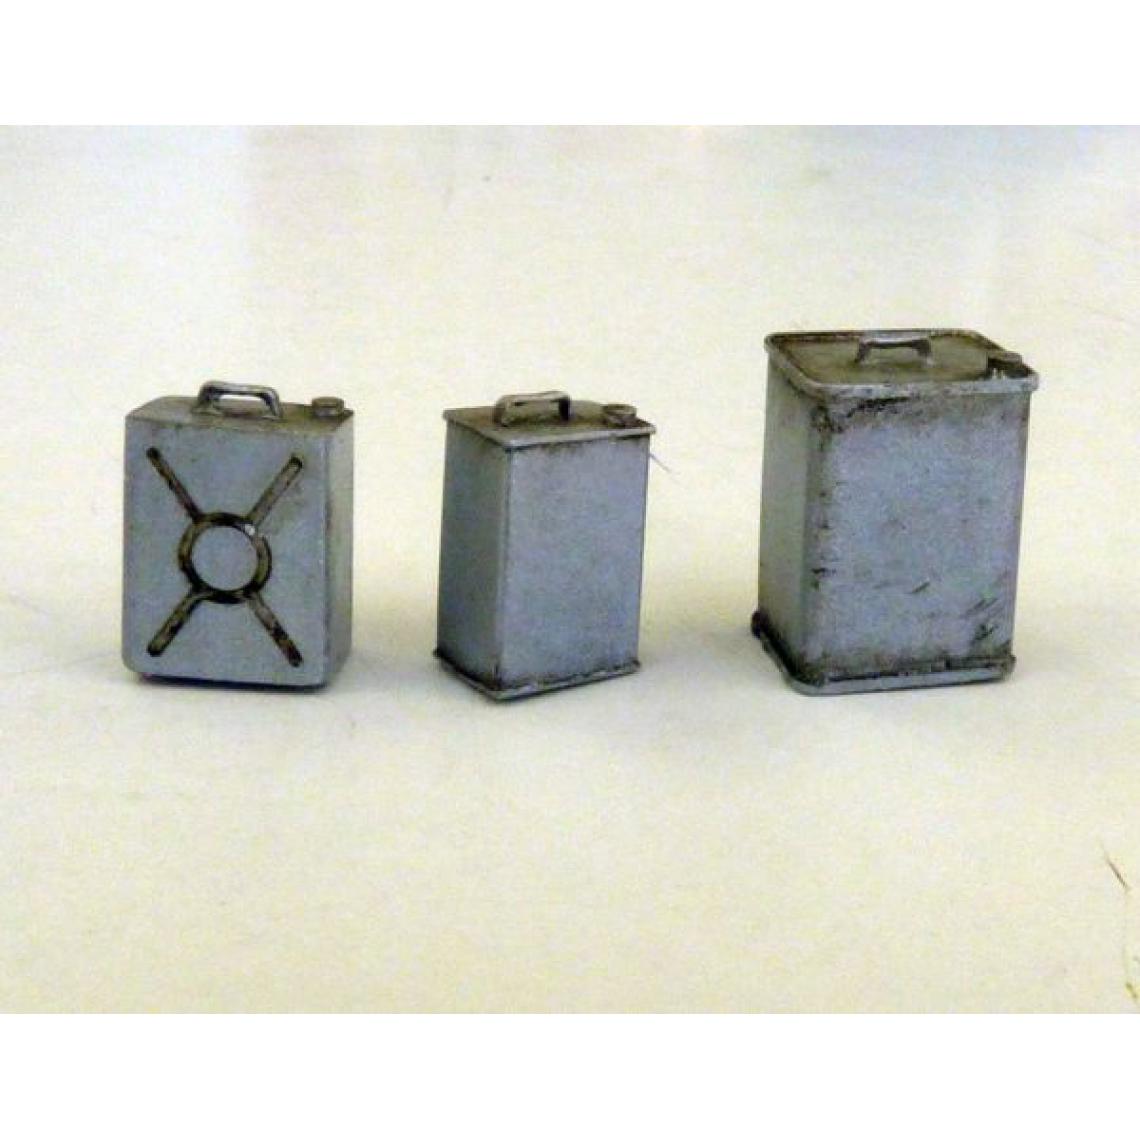 Plus Model - Square cans - 1:35e - Plus model - Accessoires et pièces